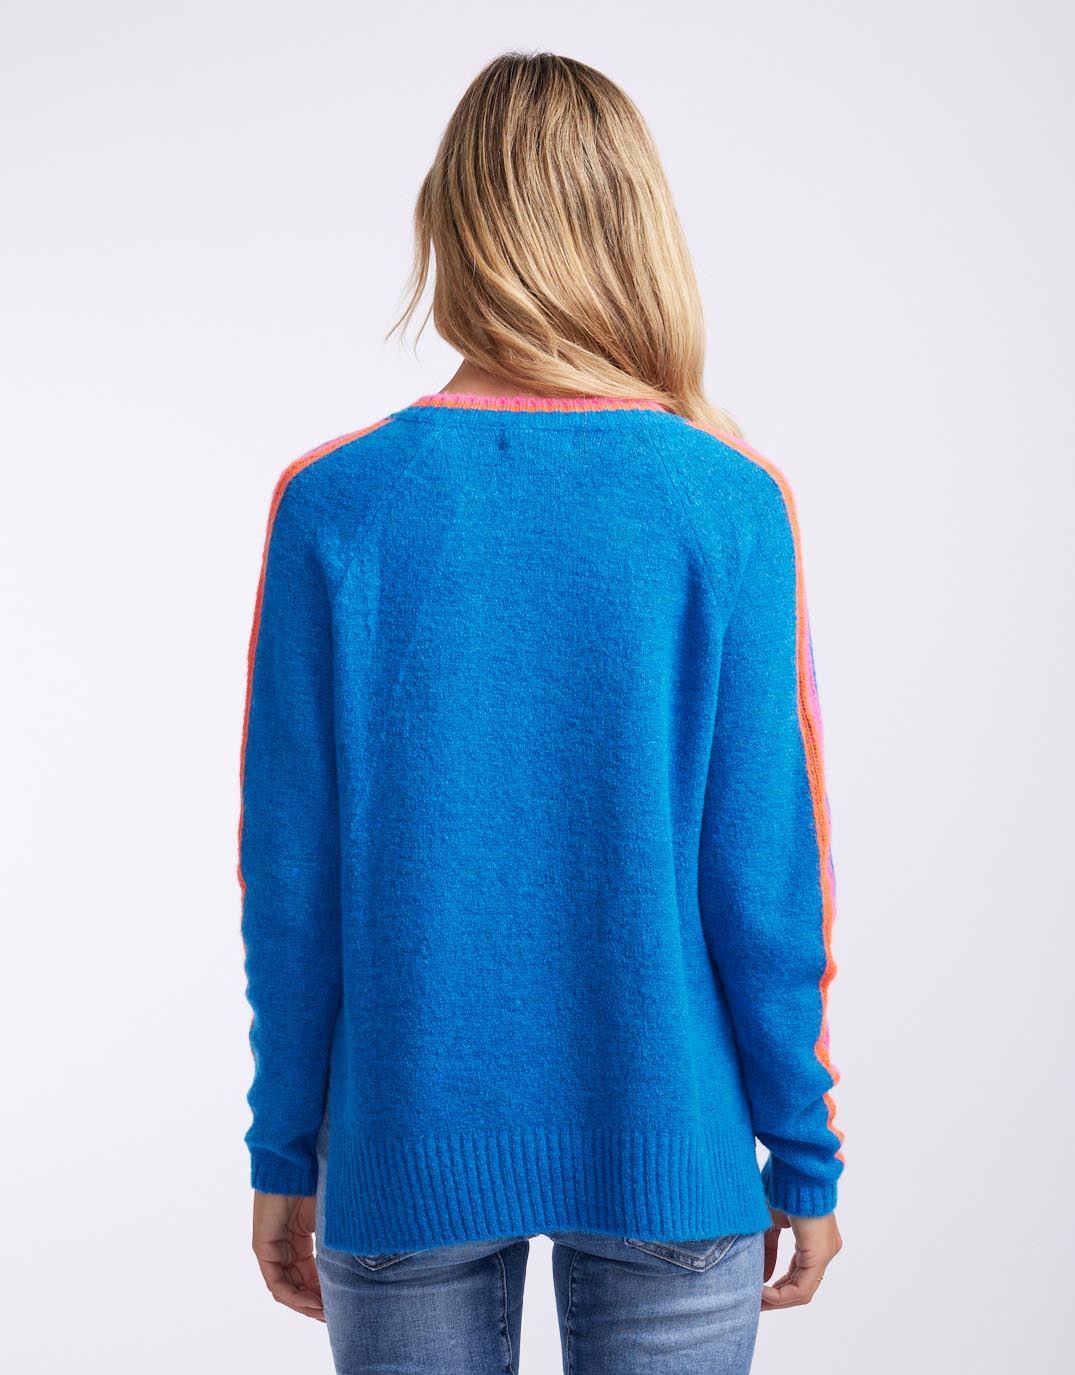 italian-star-racer-v-neck-knit-blue-womens-clothing